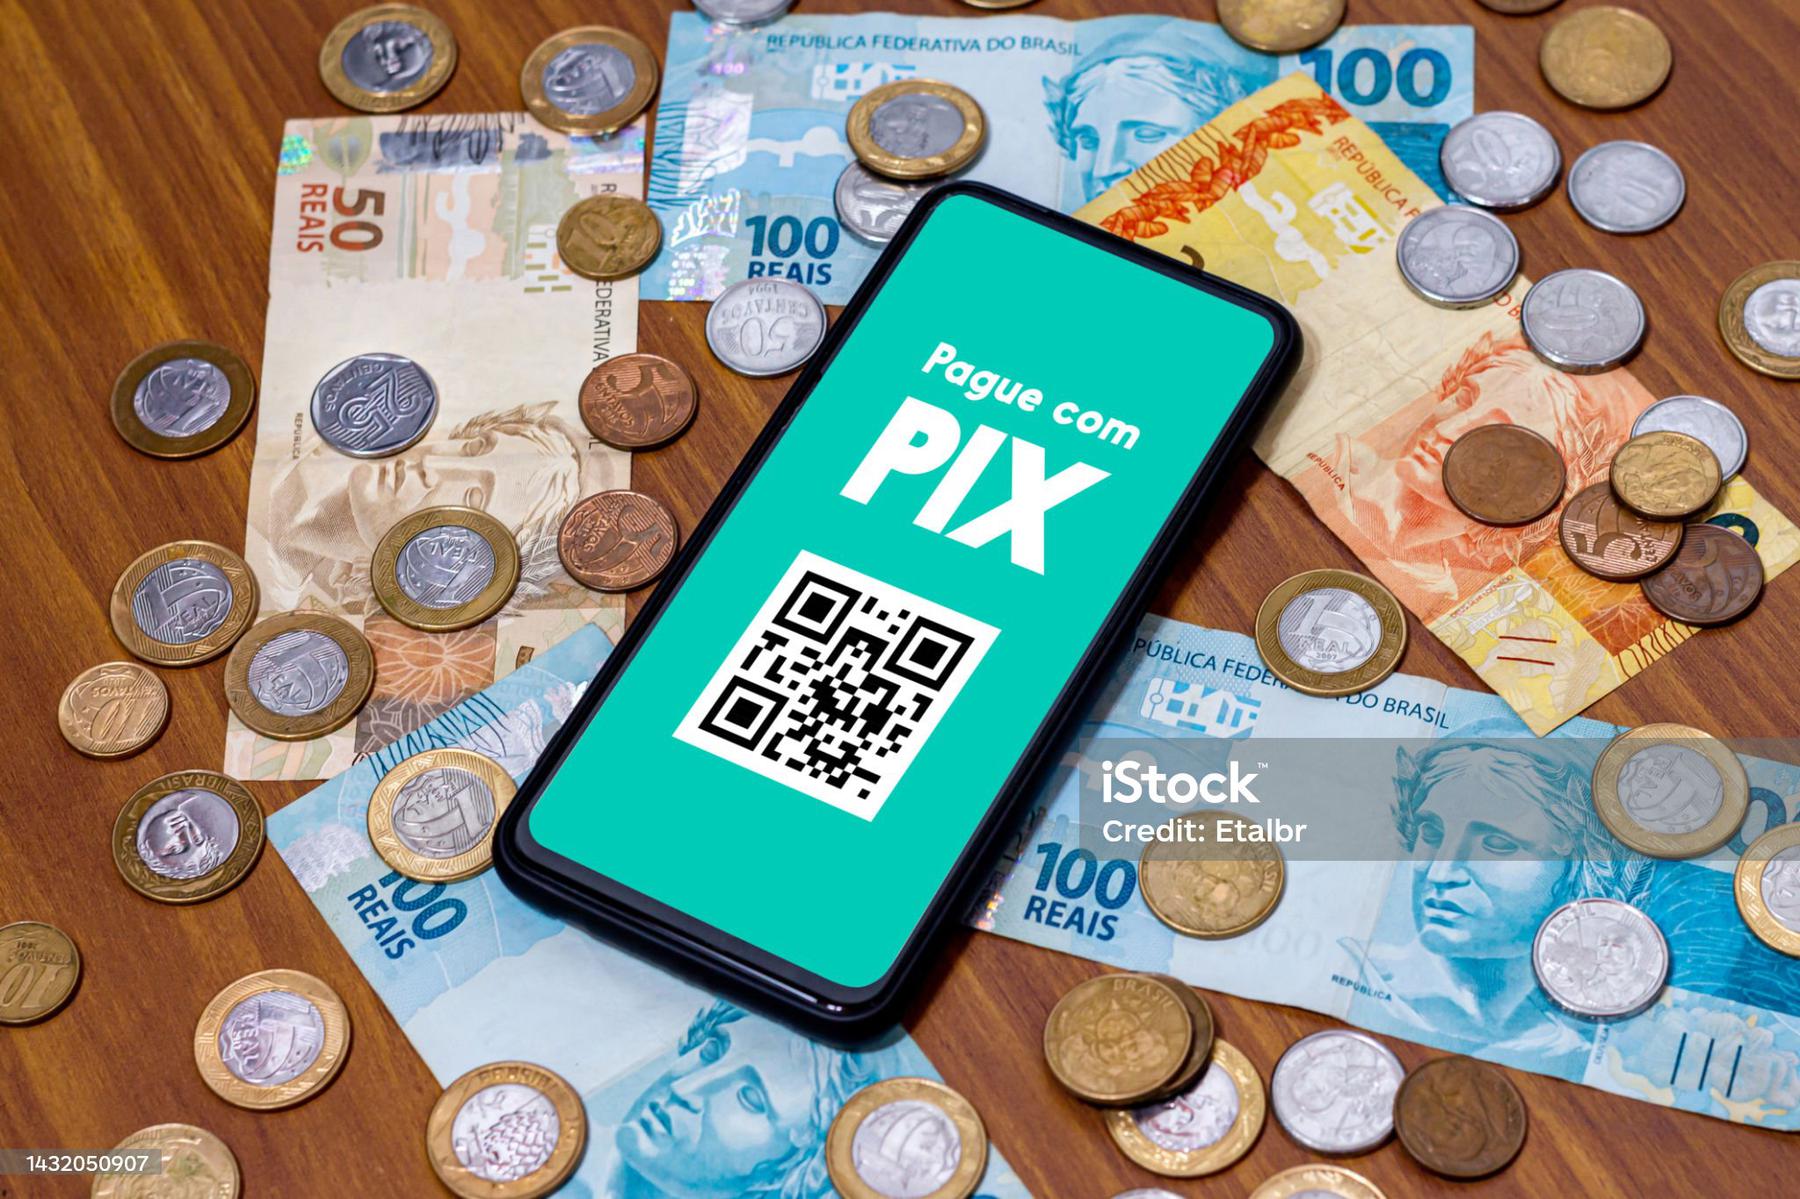 Pix vai tomar funções do cartão de crédito, diz presidente do BC - Pixabay/Divulgação